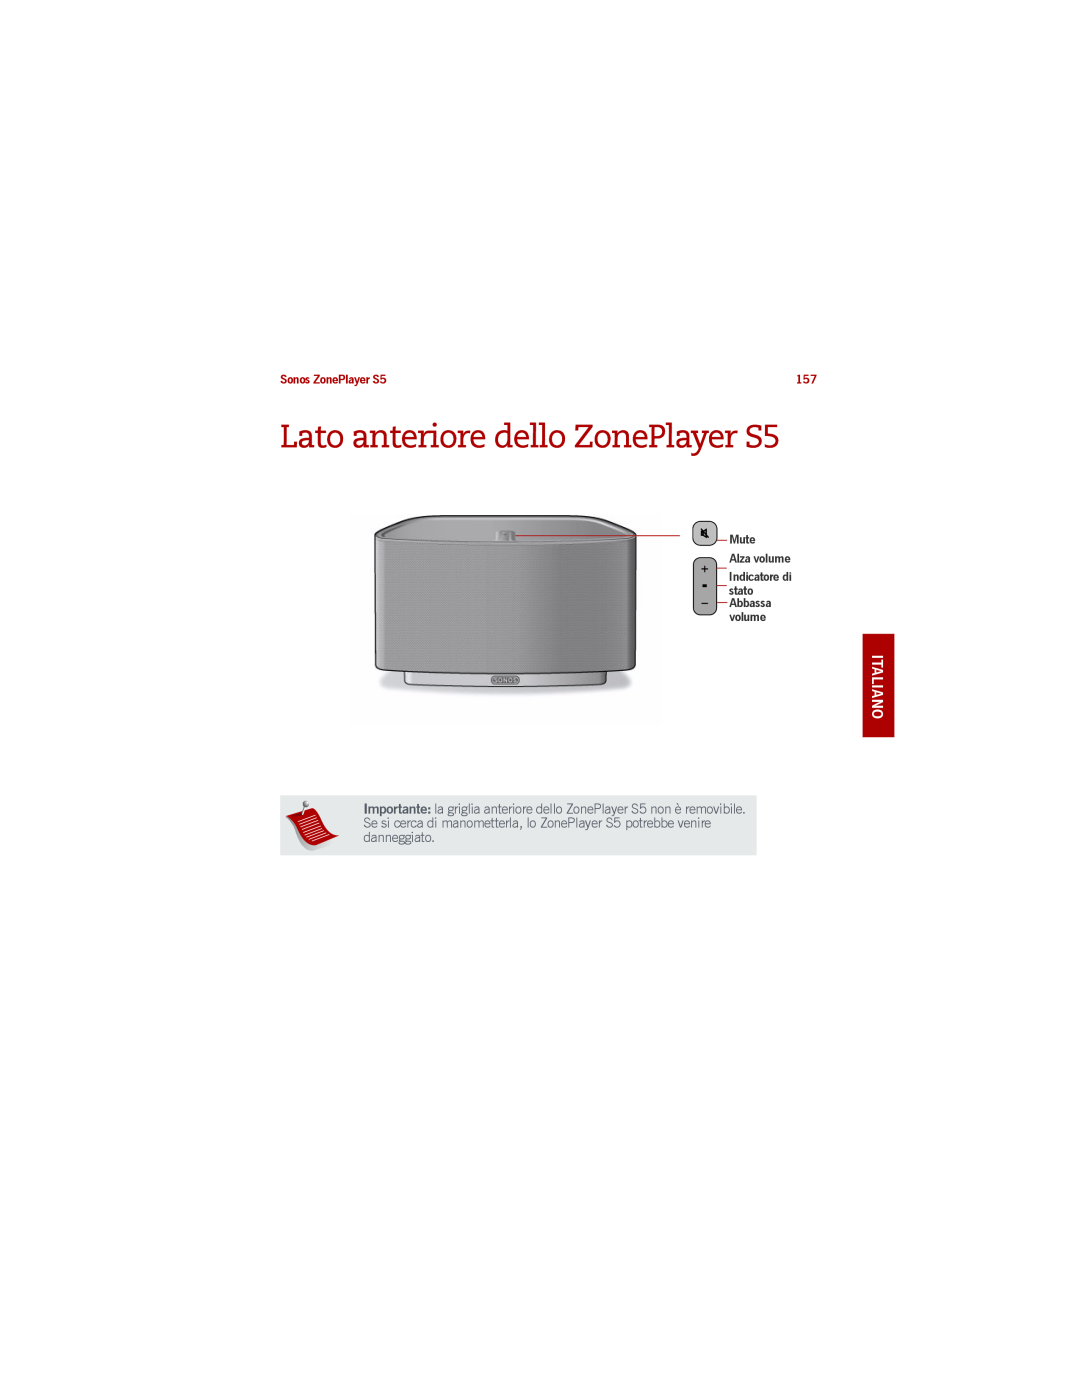 Sonos manual Lato anteriore dello ZonePlayer S5, Deutsch Italiano Svenska, Sonos ZonePlayer S5, Mute Alza volume 